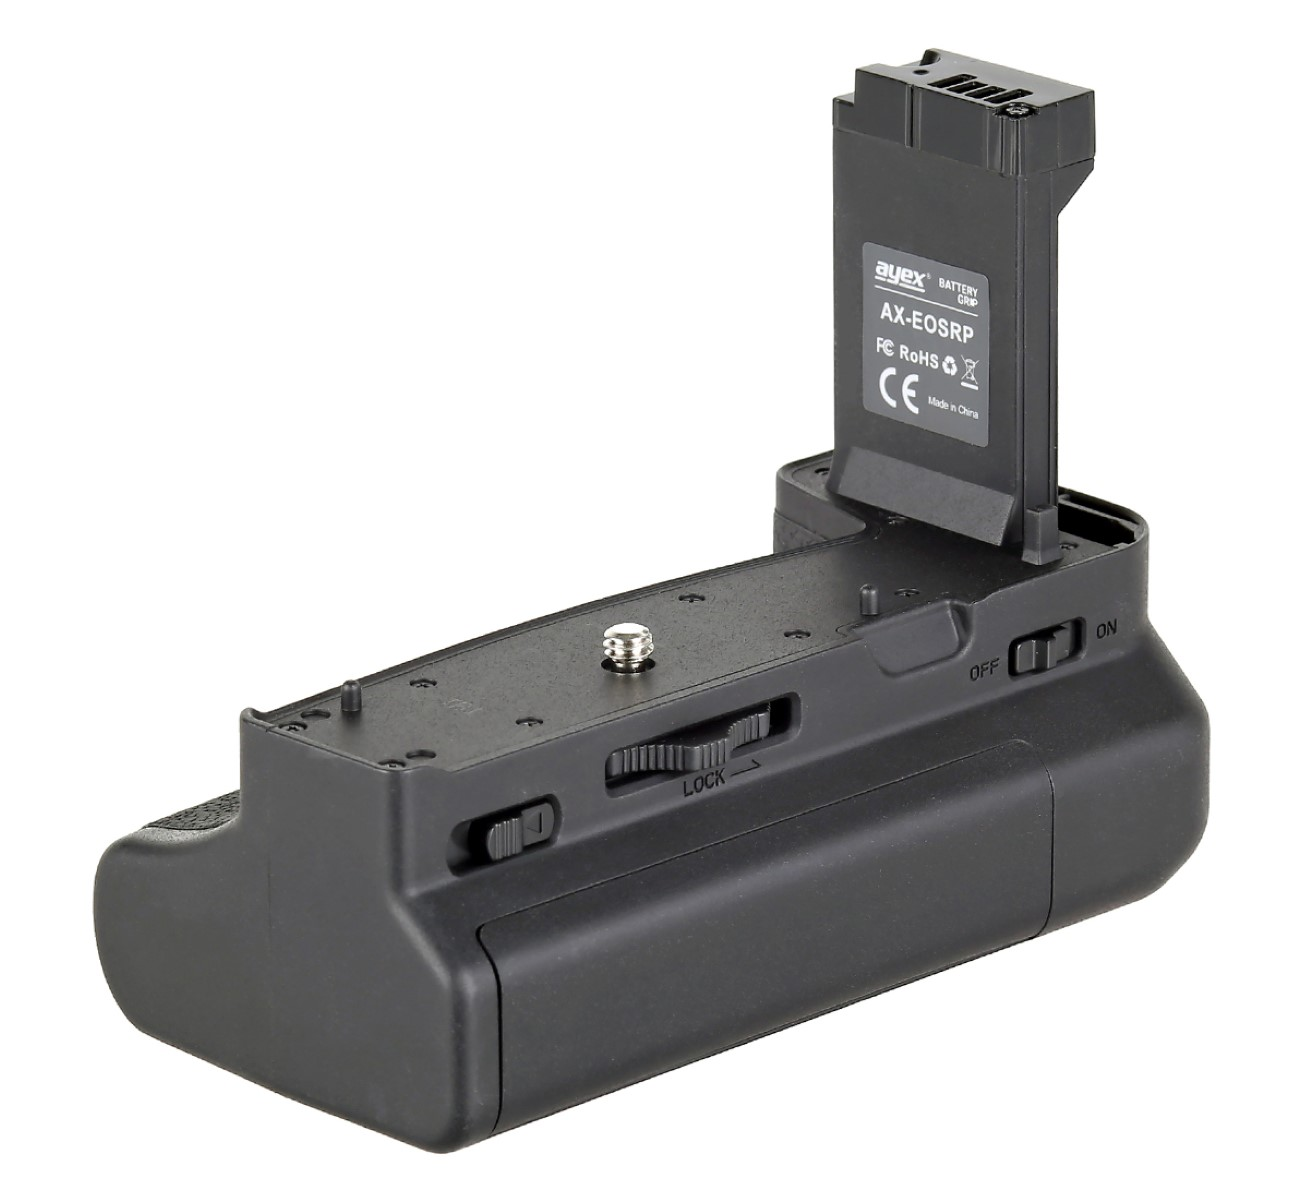 AYEX Batteriegrifff Canon EOS RP EG-E1, Batteriegriff, mit R8 Auslöseknopf Handgriff ähnlich Black